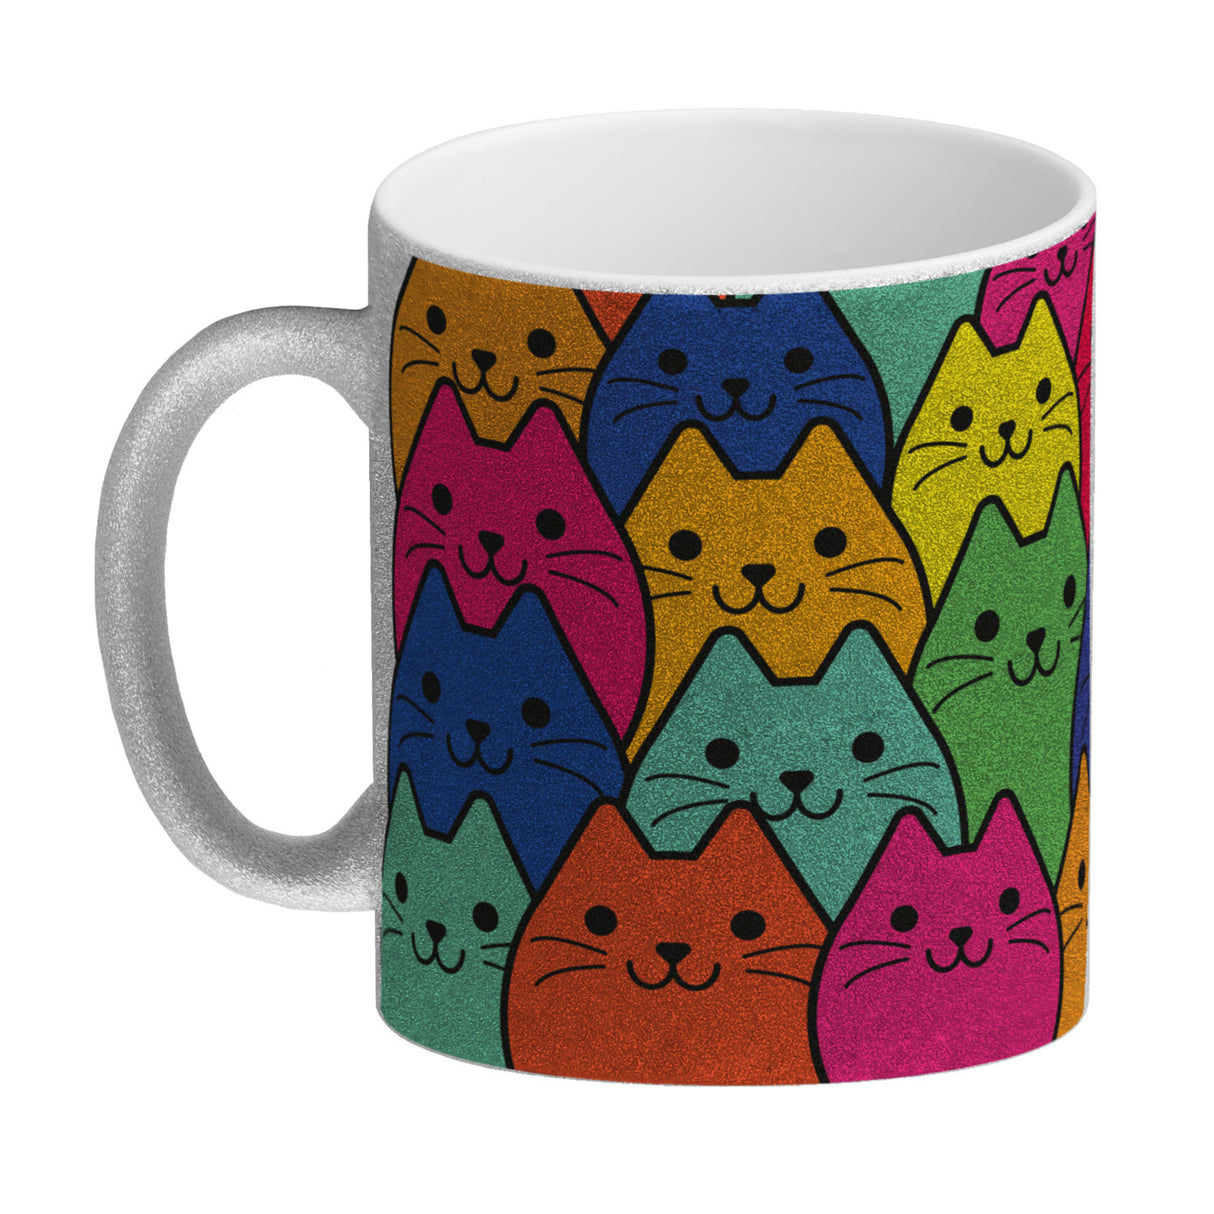 Kaffeebecher mit Katzen Motiv - Buntes Wimmelbild mit Comic Kätzchen